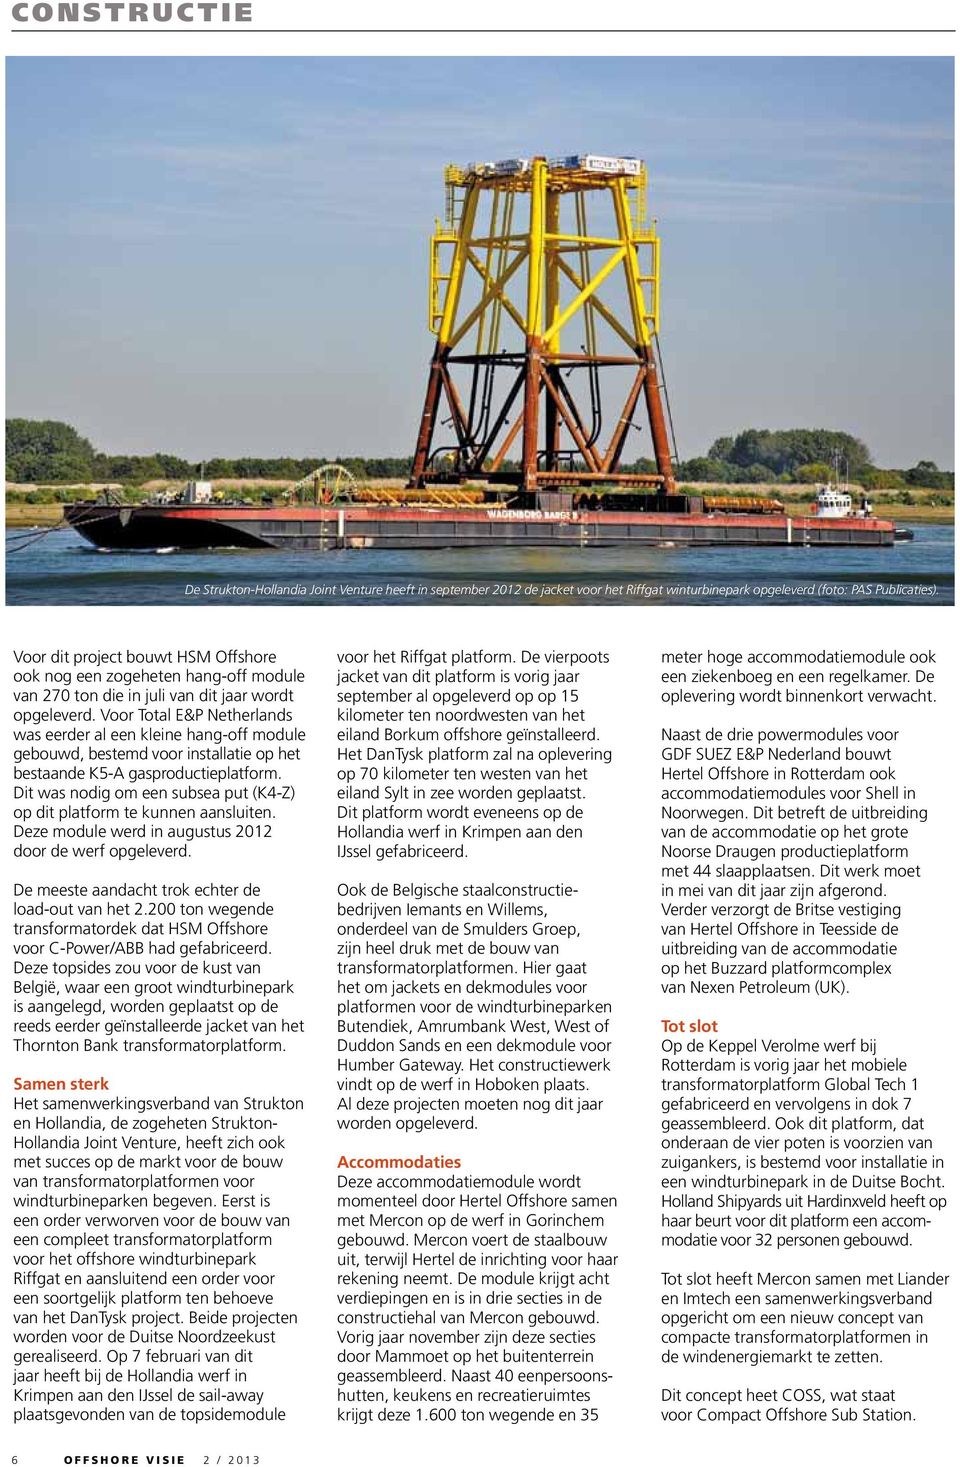 Voor Total E&P Netherlands was eerder al een kleine hang-off module gebouwd, bestemd voor installatie op het bestaande K5-A gasproductieplatform.